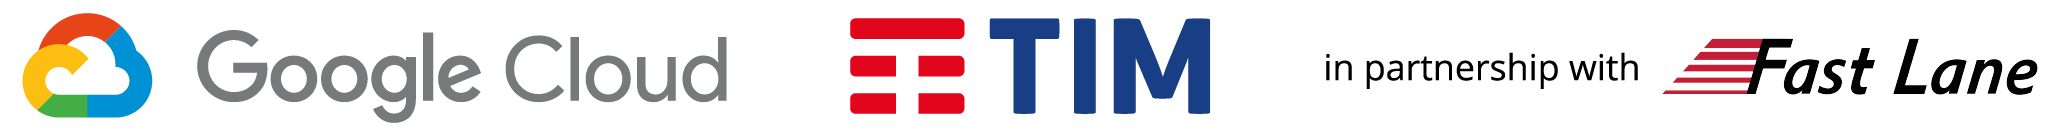 GoogleCloud_tim_faslane logos